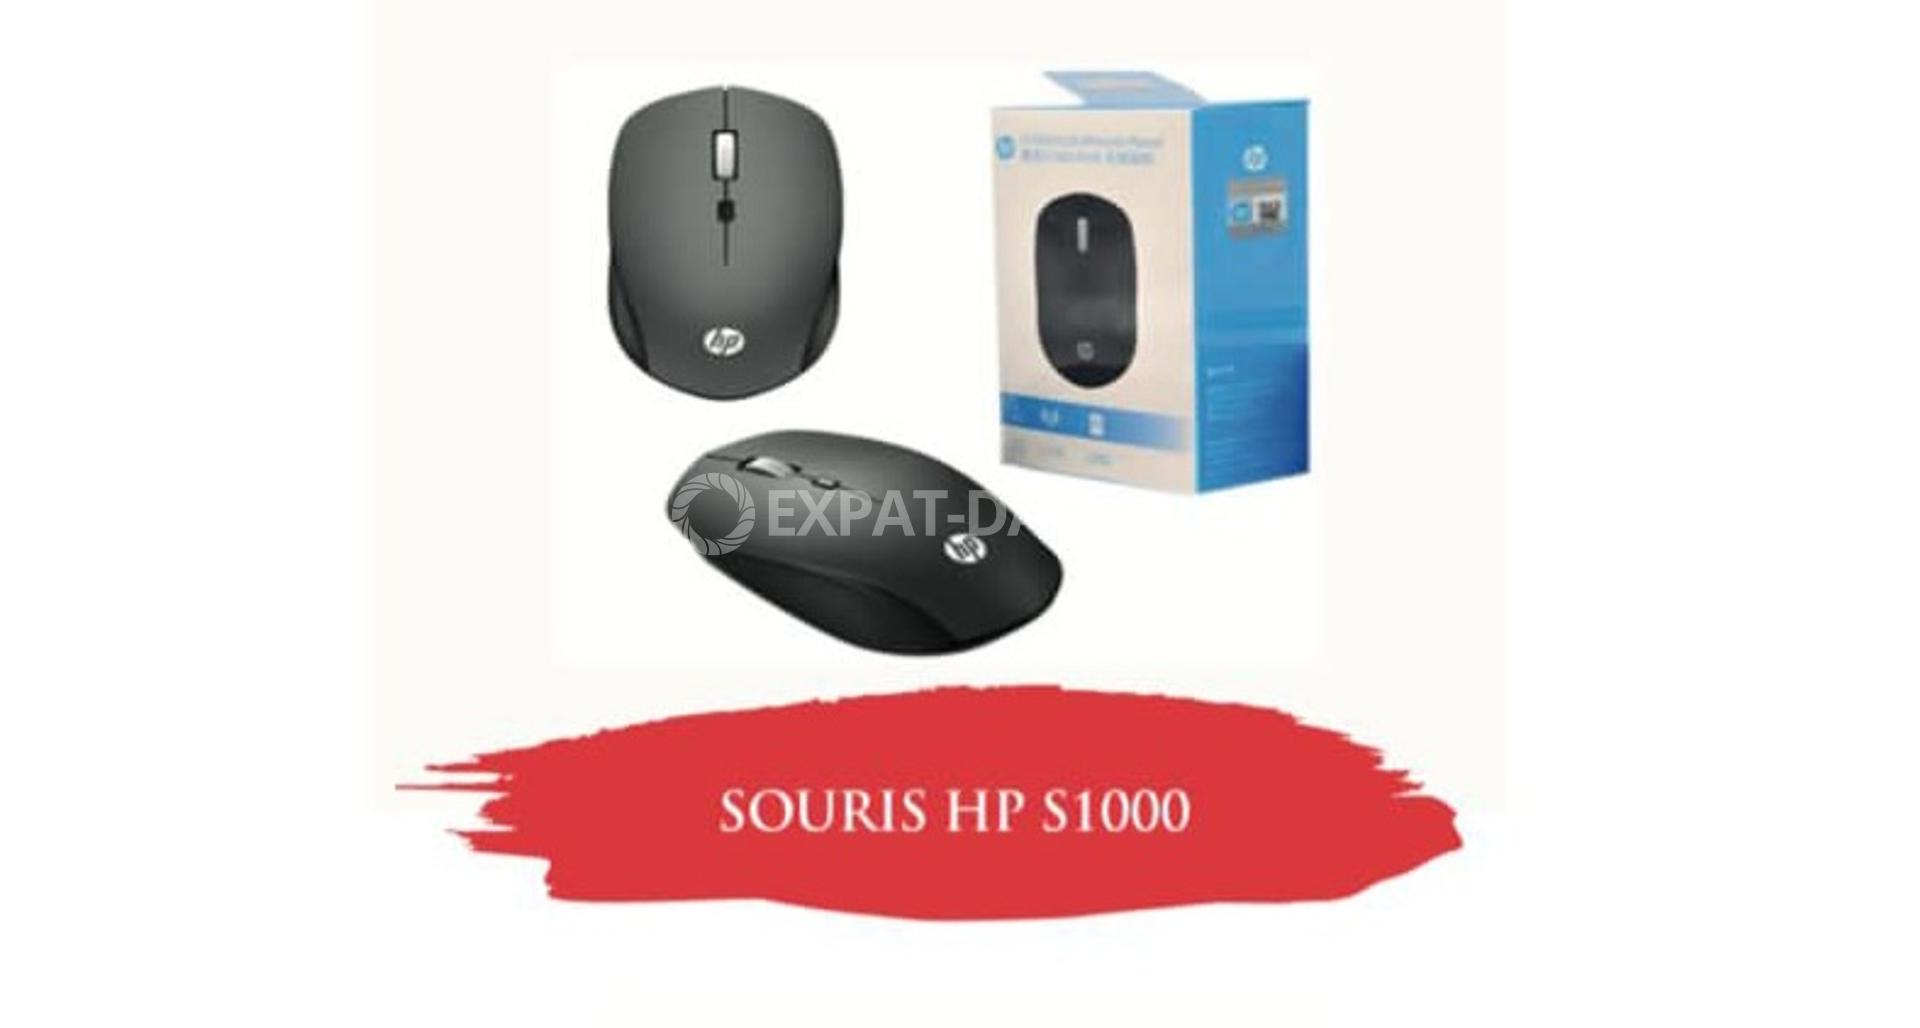 HP SOURIS SANS FIL HP-S1000 - Caractéristiques - Yuupee Dakar